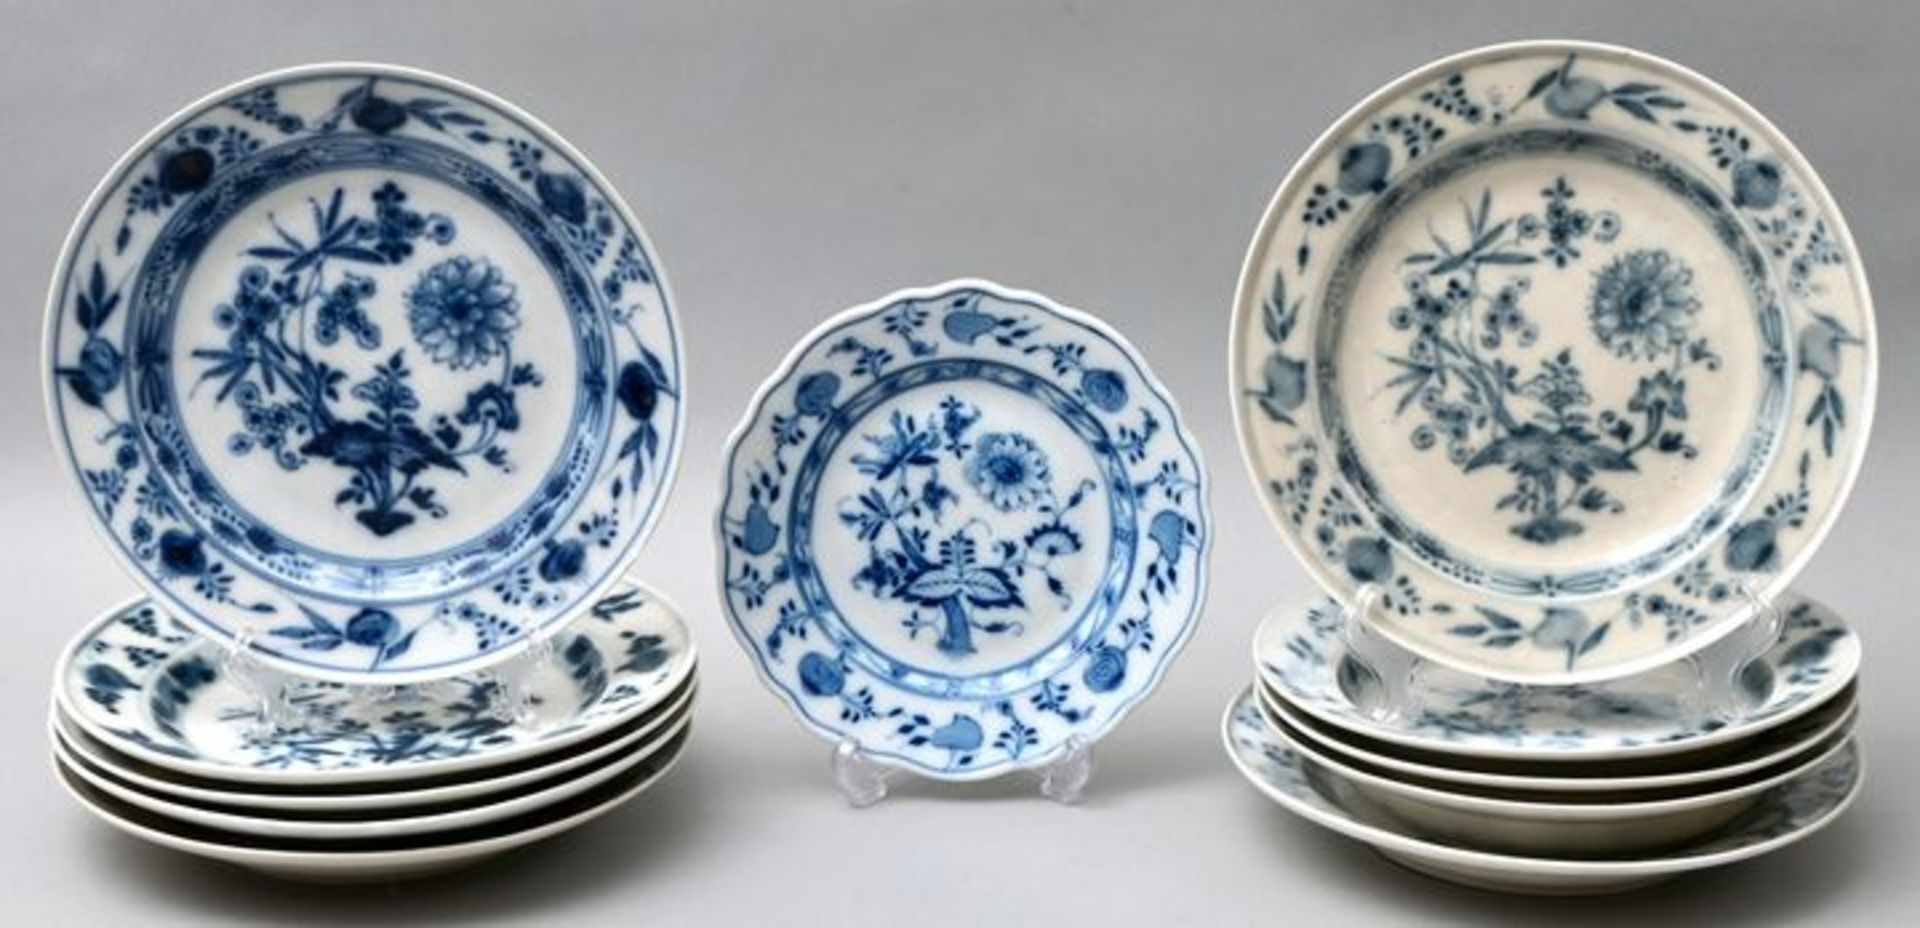 Zwiebelmusterteller/ plates blue onion pattern